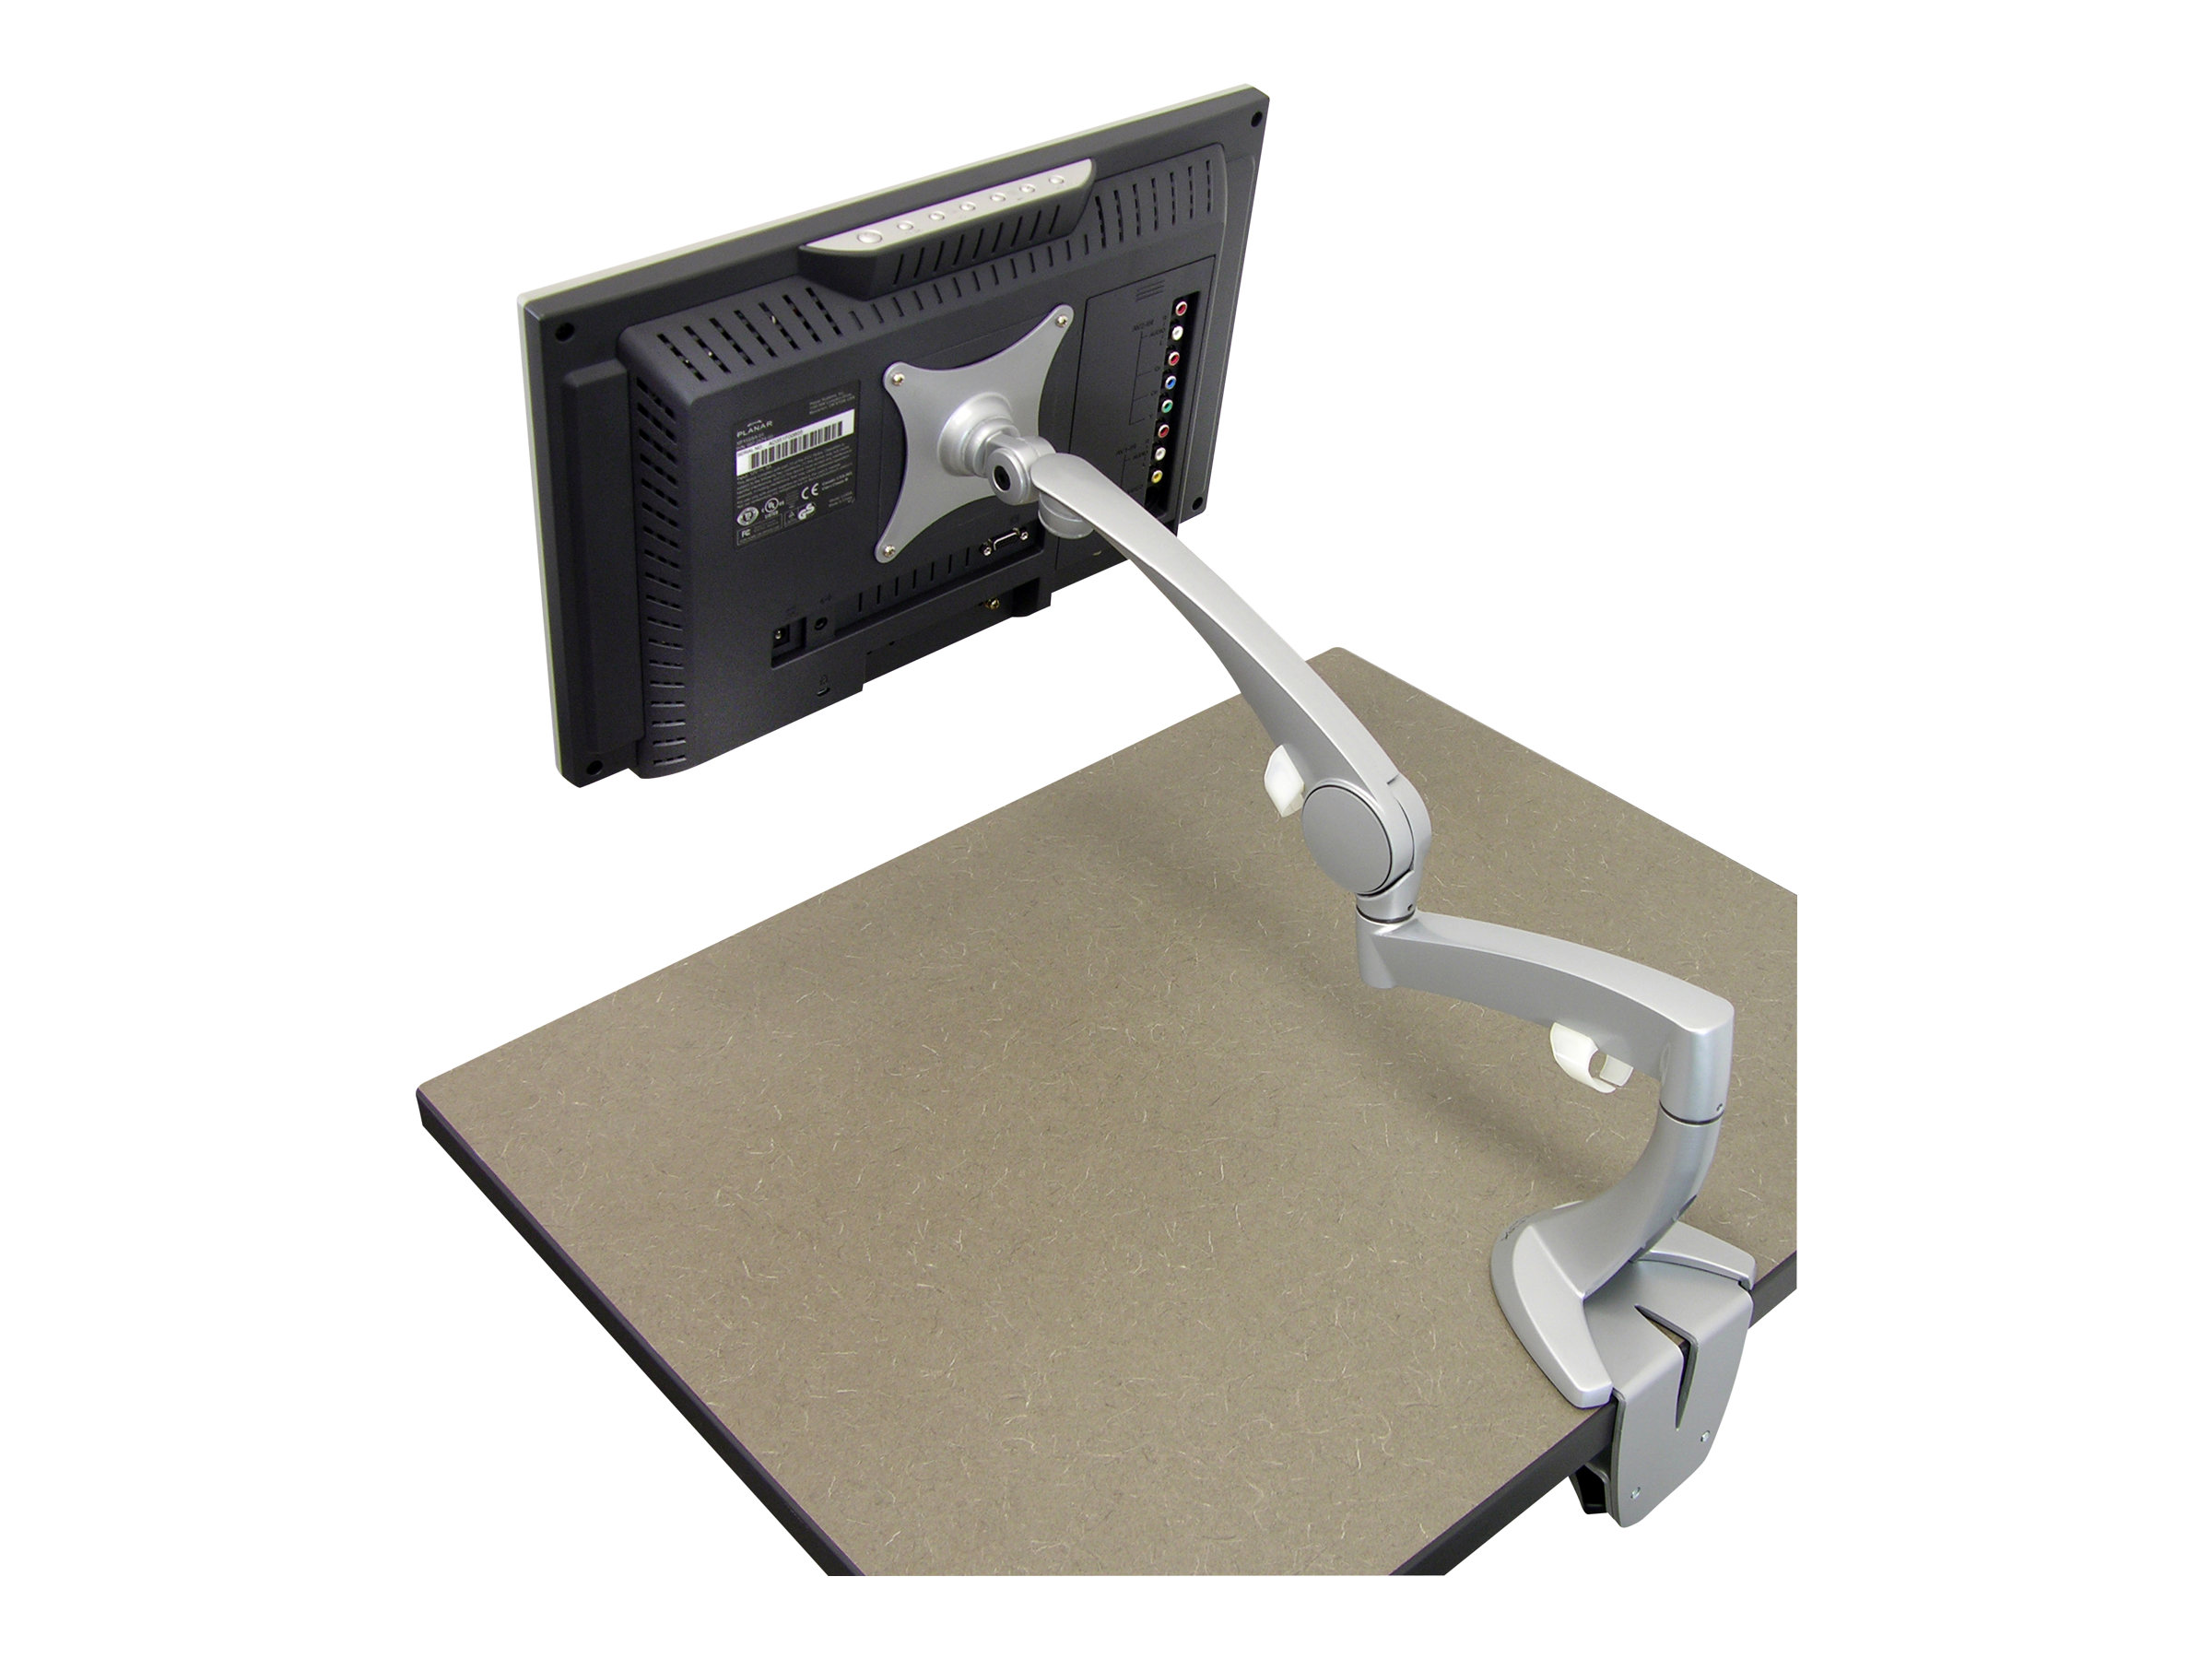 Ergotron Neo-Flex - Befestigungskit (Gelenkarm, Spannbefestigung für Tisch, Tischplattenbohrung, Basis, Verlängerung) - für LCD-Display - Vollaluminium - Silber - Bildschirmgröße: bis zu 61 cm (bis zu 24 Zoll)